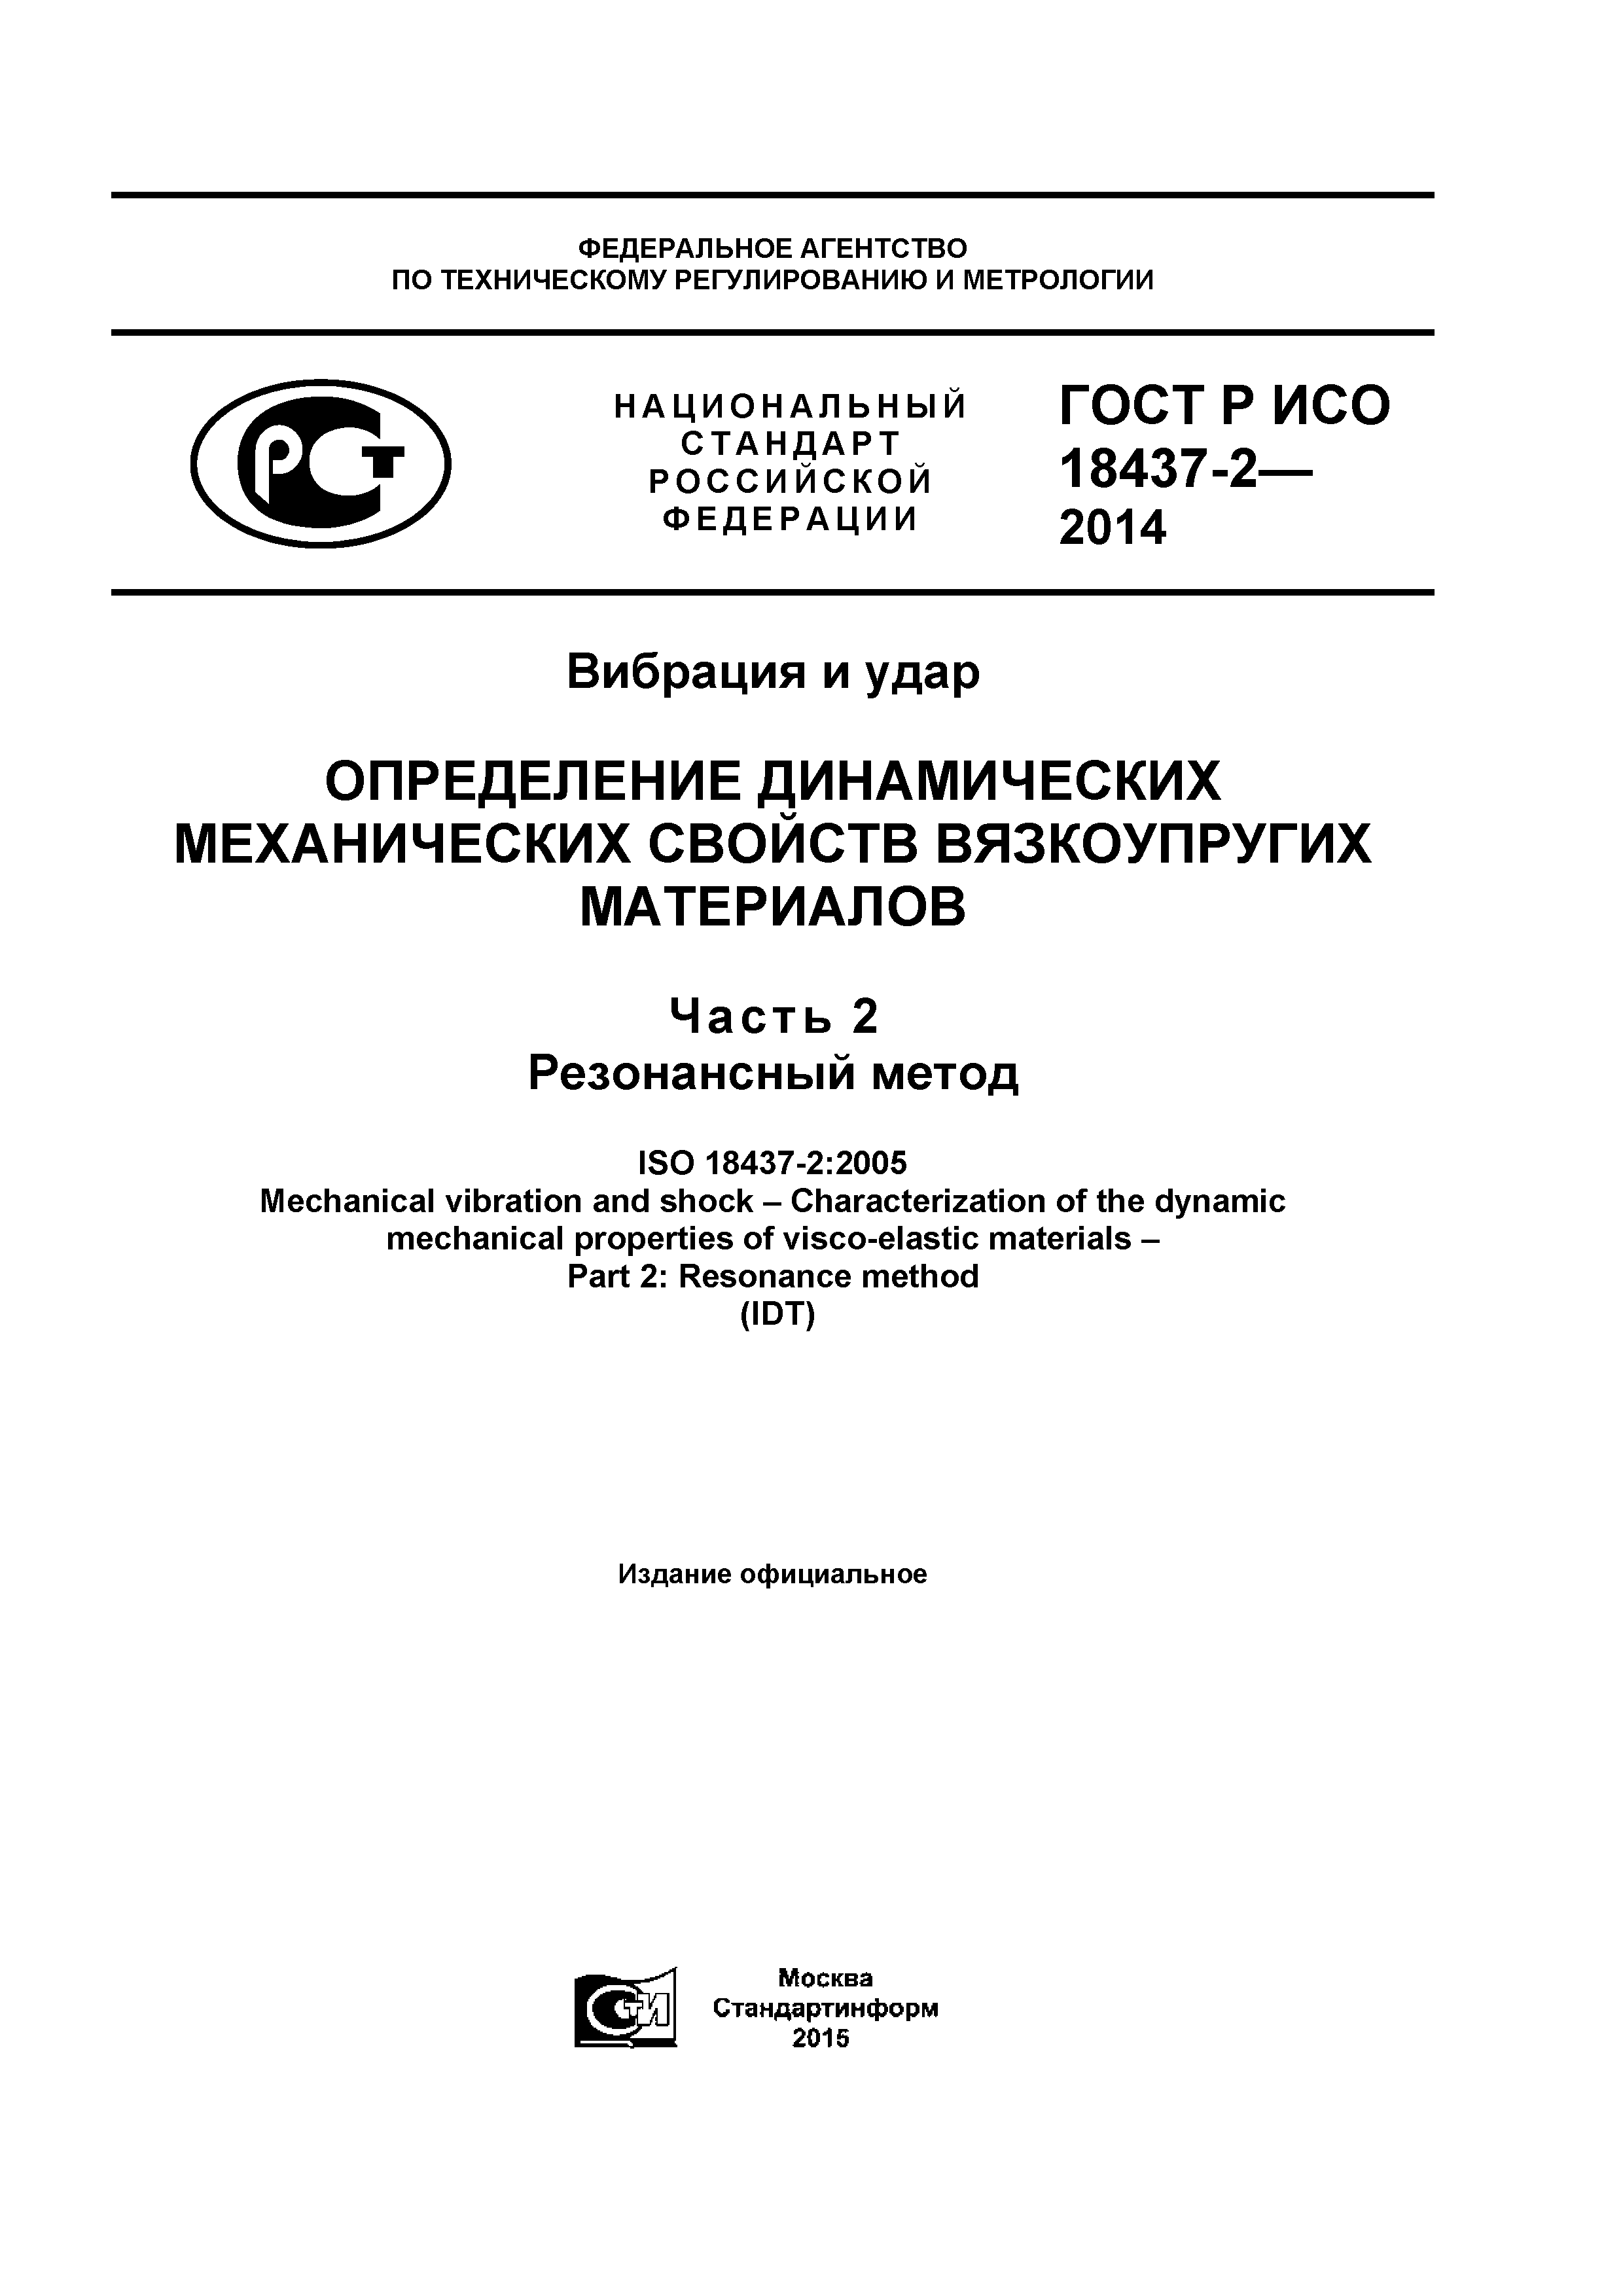 ГОСТ Р ИСО 18437-2-2014